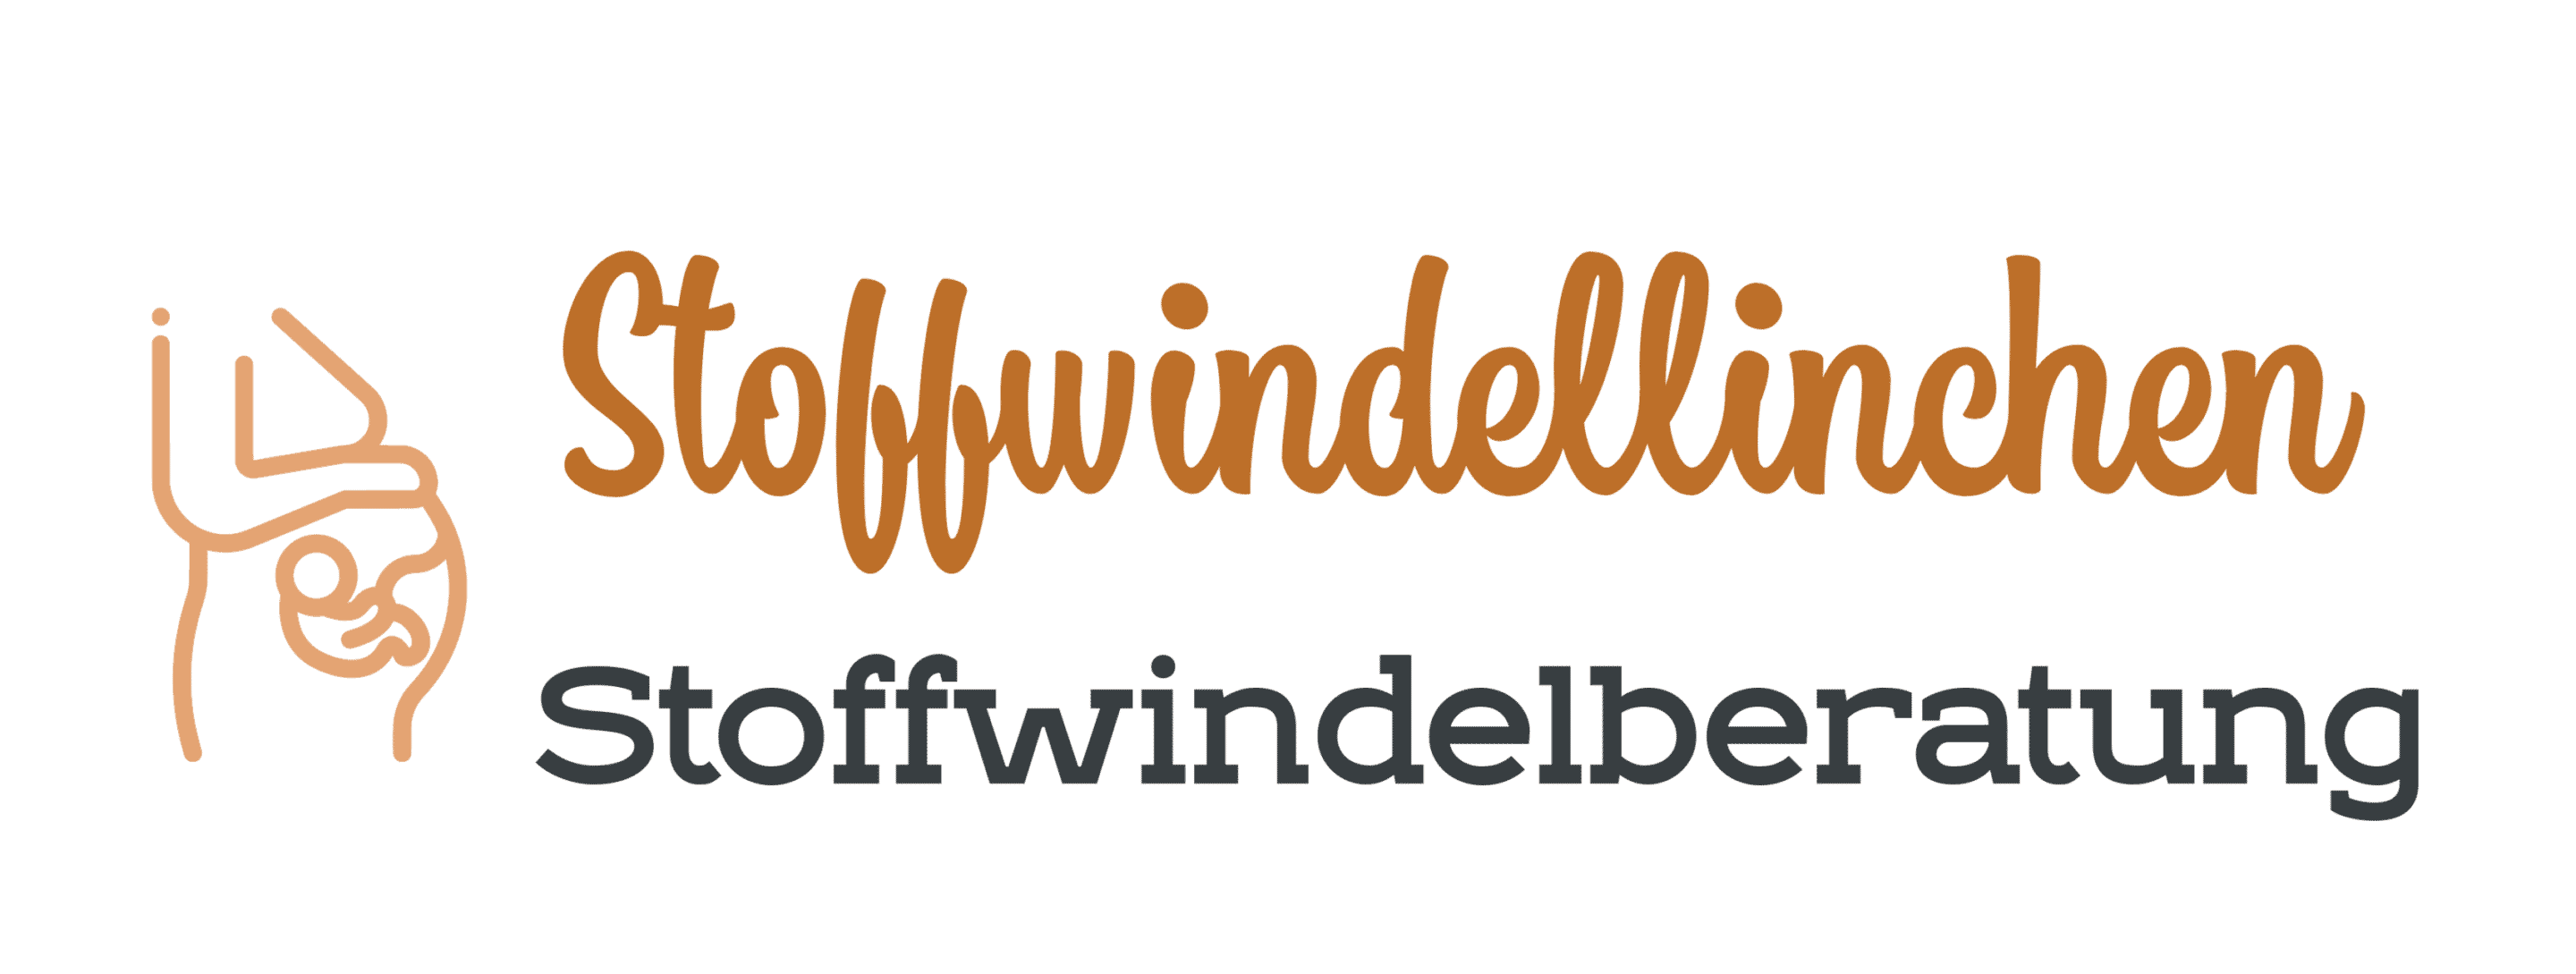 Stoffwindellinchen Stoffwindelberatung Logo